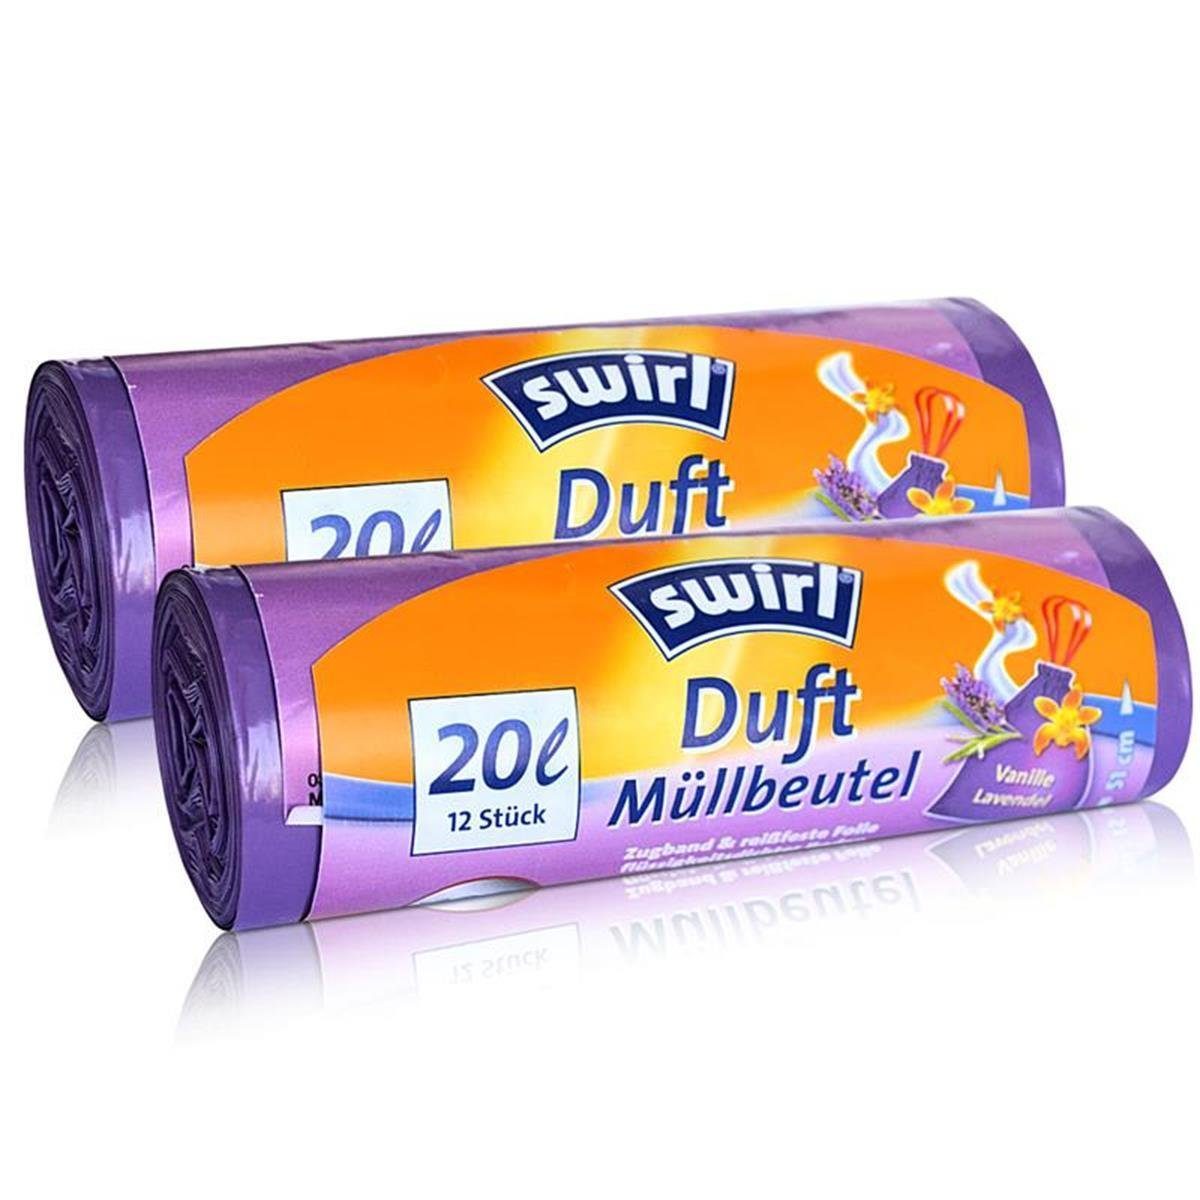 Swirl Müllbeutel 2x Swirl Duft Müllbeutel 20L (12 stk./ Rolle) Vanille / Lavendel Duf